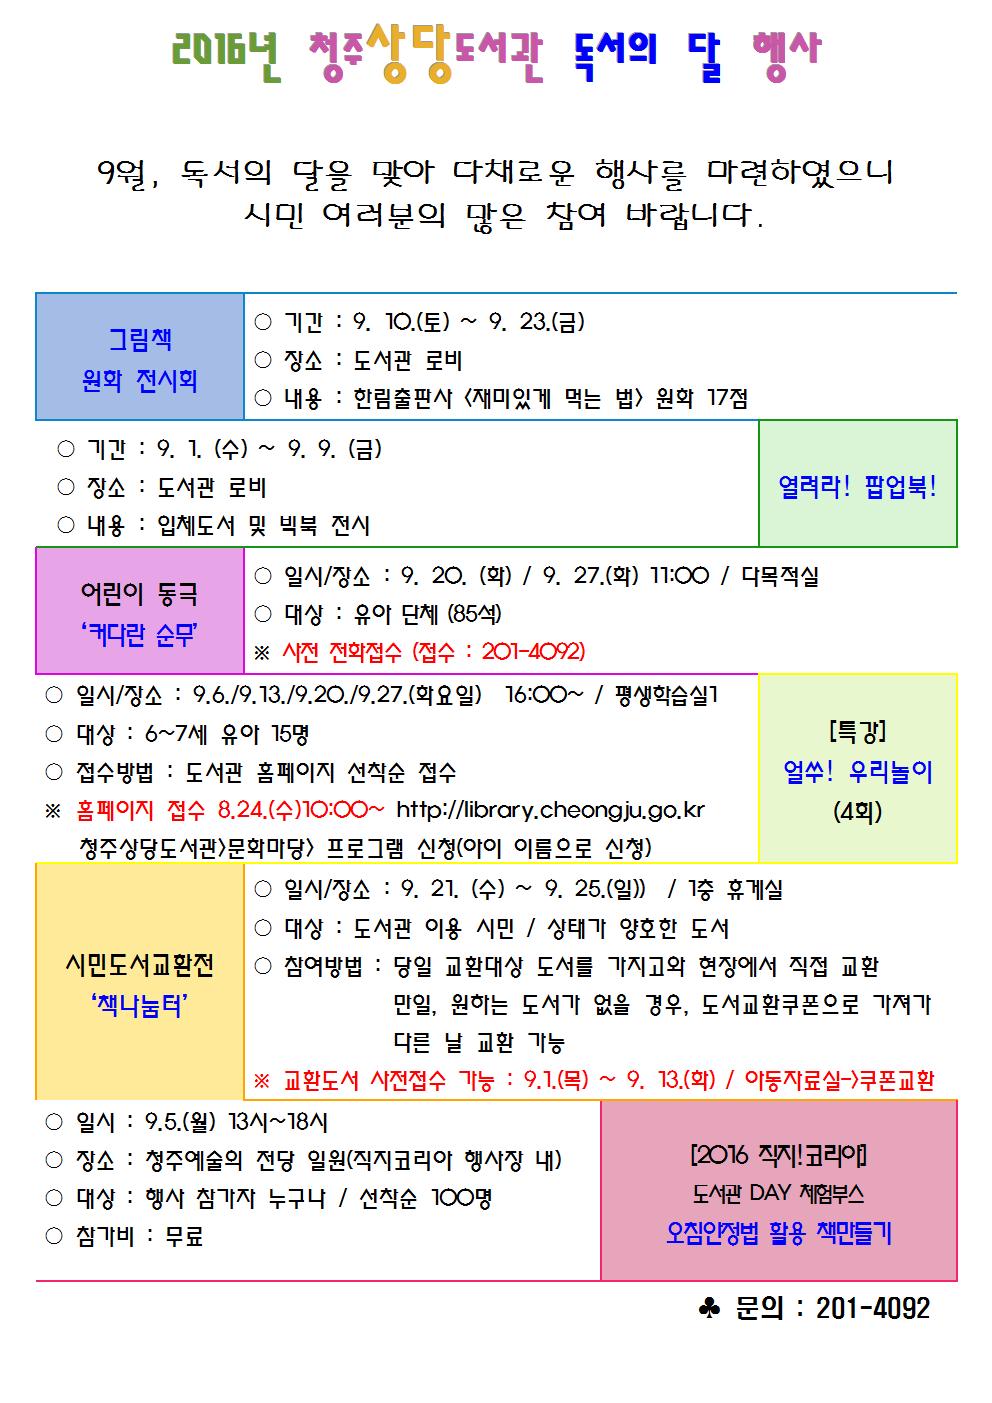 2016년 상당도서관 독서의달 행사 안내